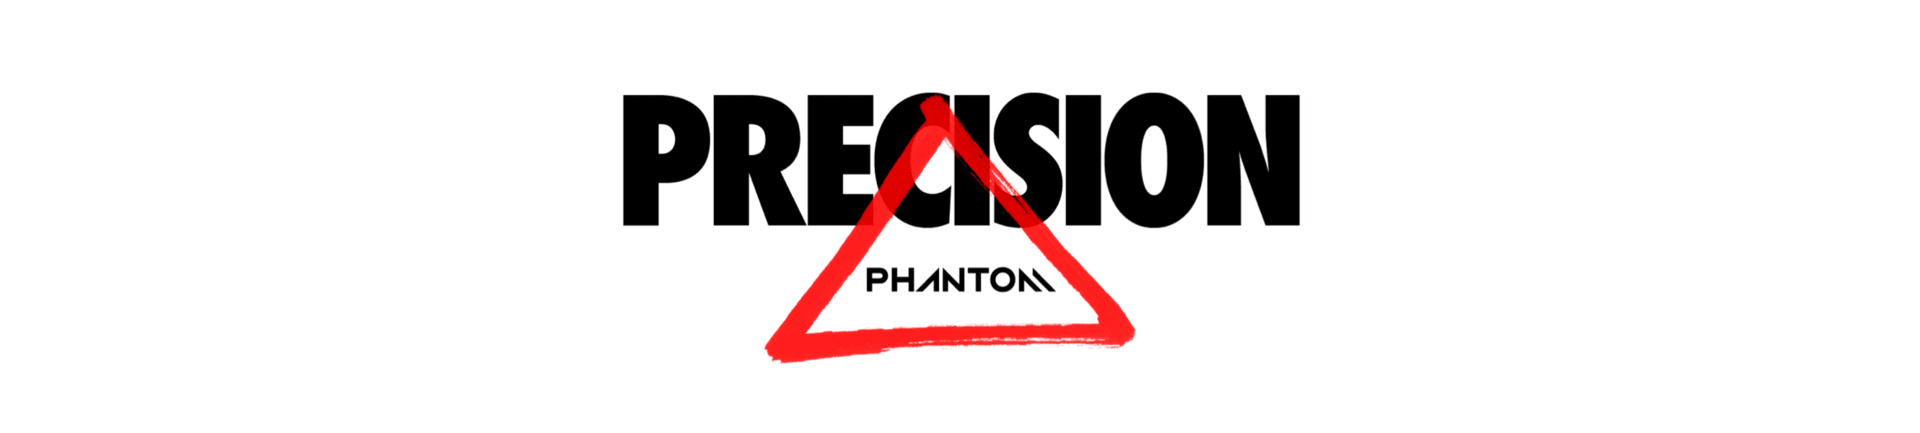 nike phantom precision